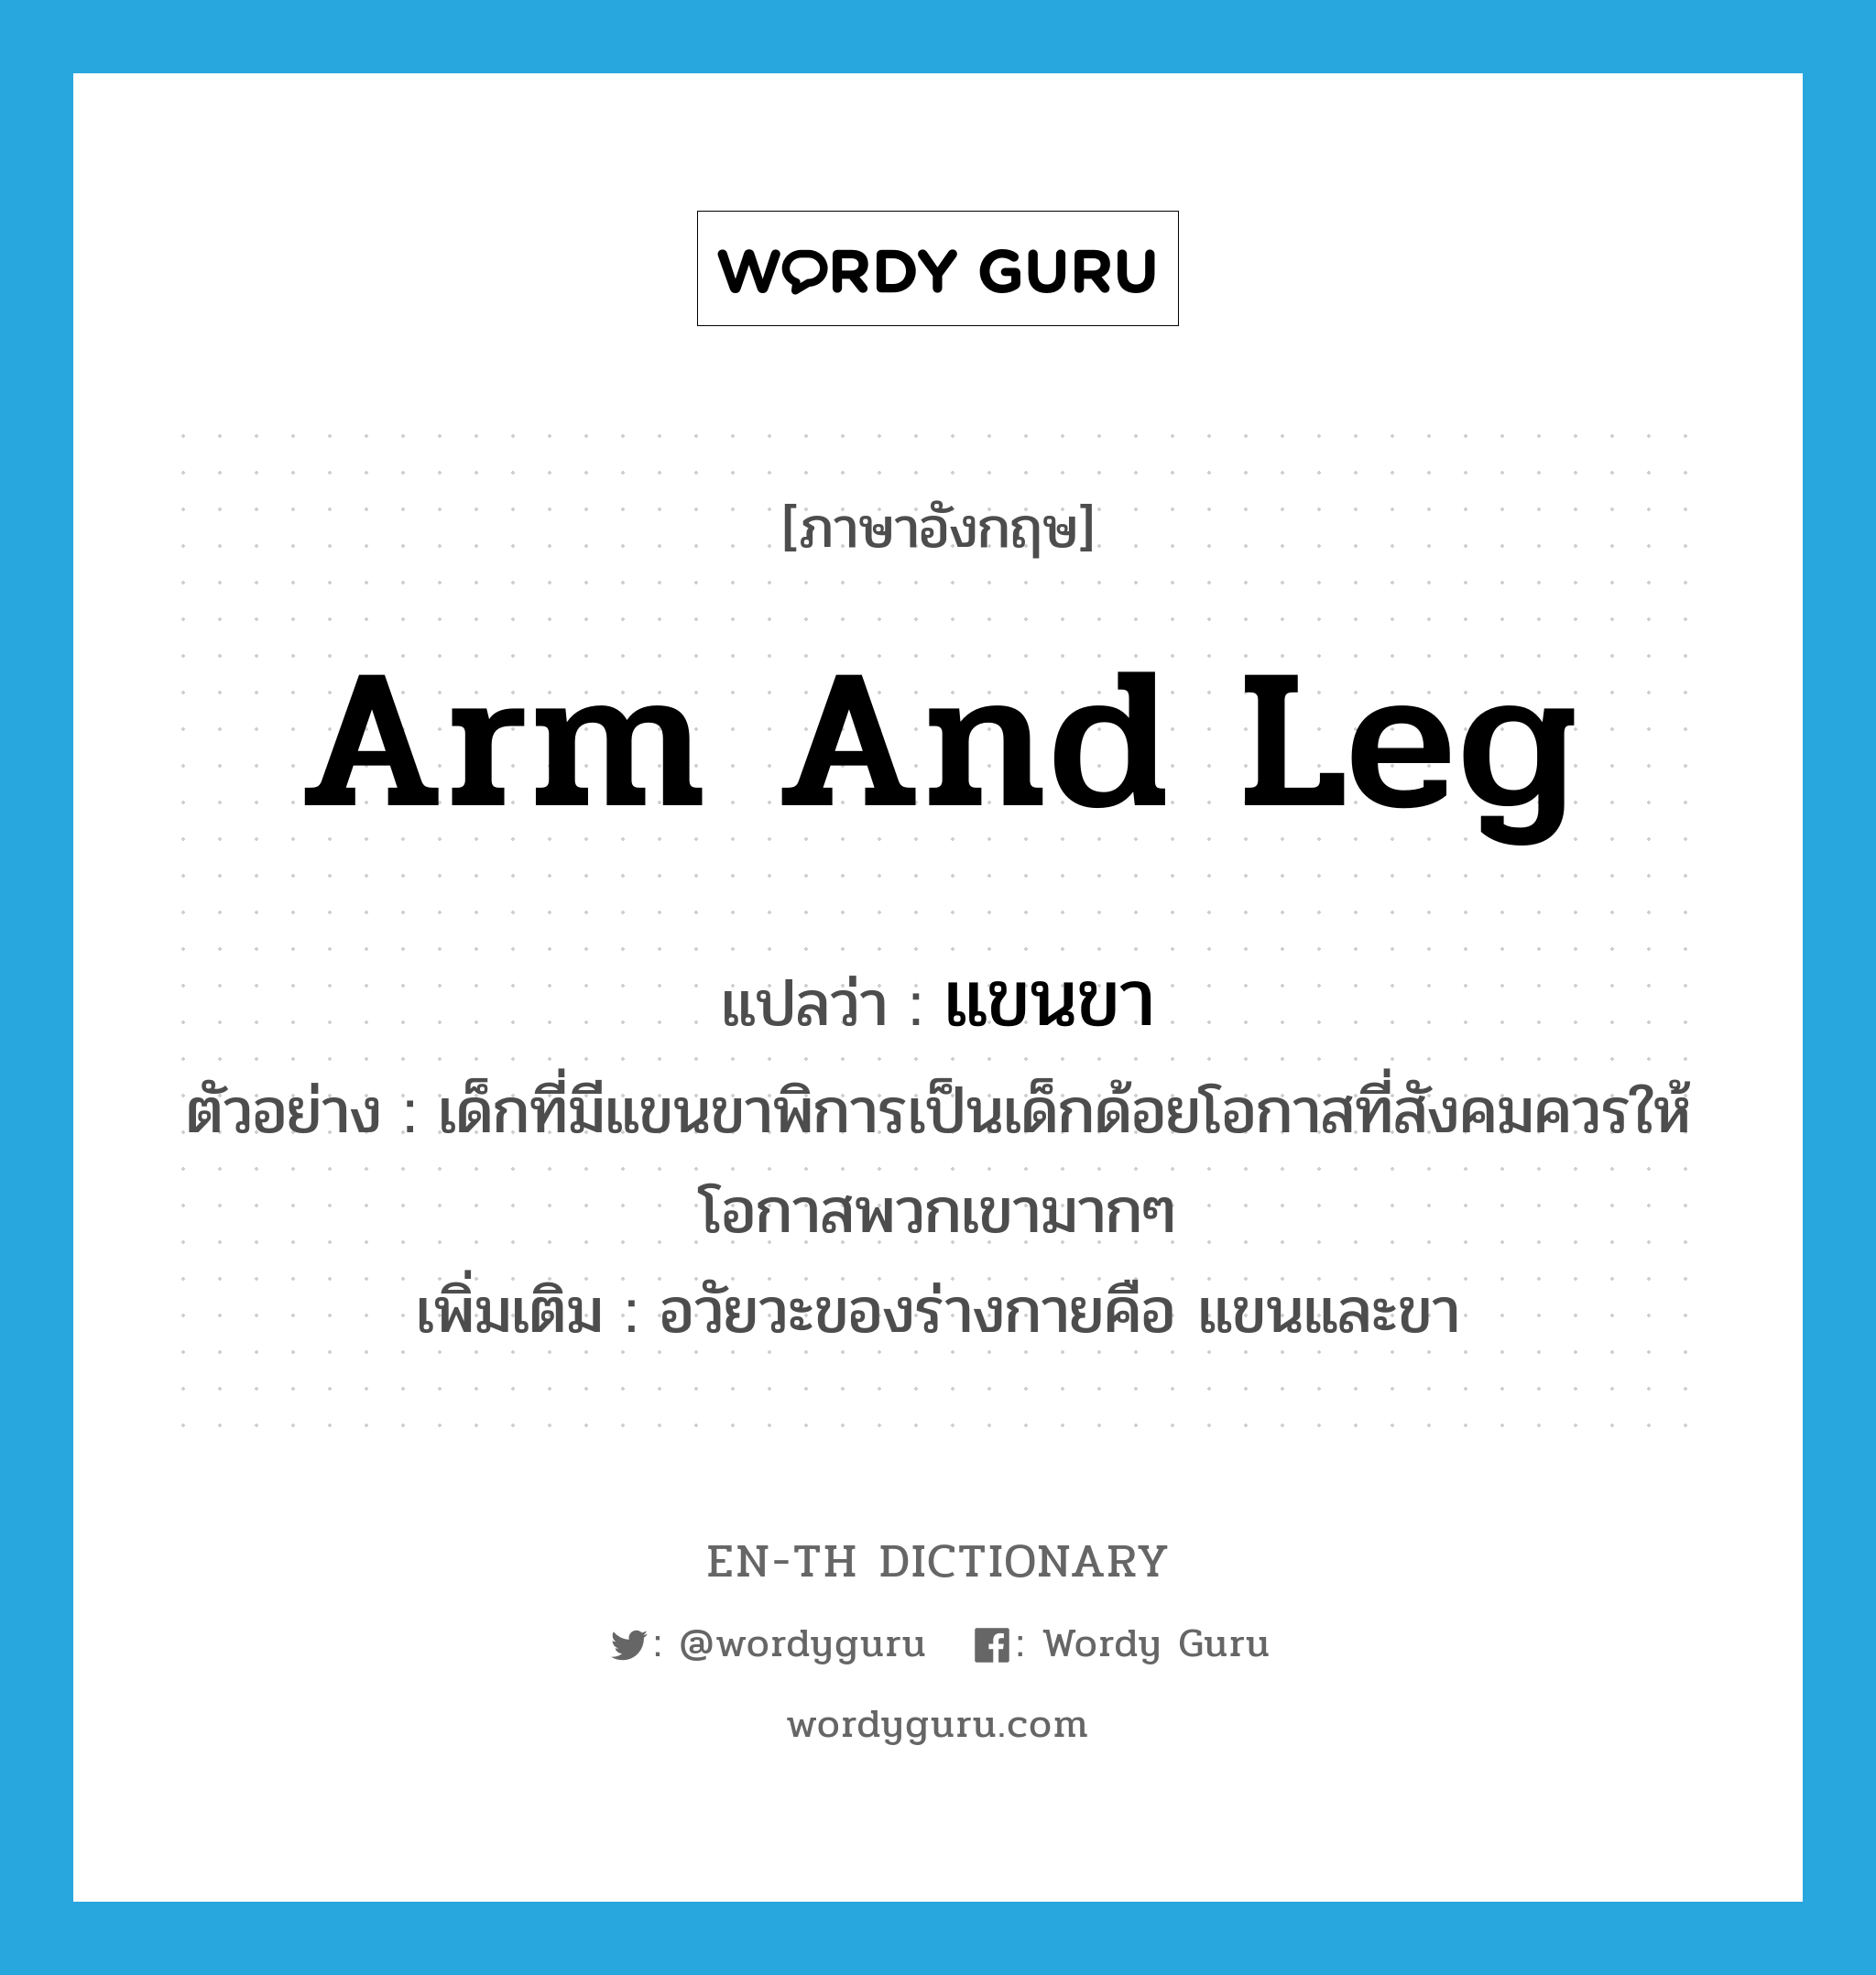 arm and leg แปลว่า?, คำศัพท์ภาษาอังกฤษ arm and leg แปลว่า แขนขา ประเภท N ตัวอย่าง เด็กที่มีแขนขาพิการเป็นเด็กด้อยโอกาสที่สังคมควรให้โอกาสพวกเขามากๆ เพิ่มเติม อวัยวะของร่างกายคือ แขนและขา หมวด N